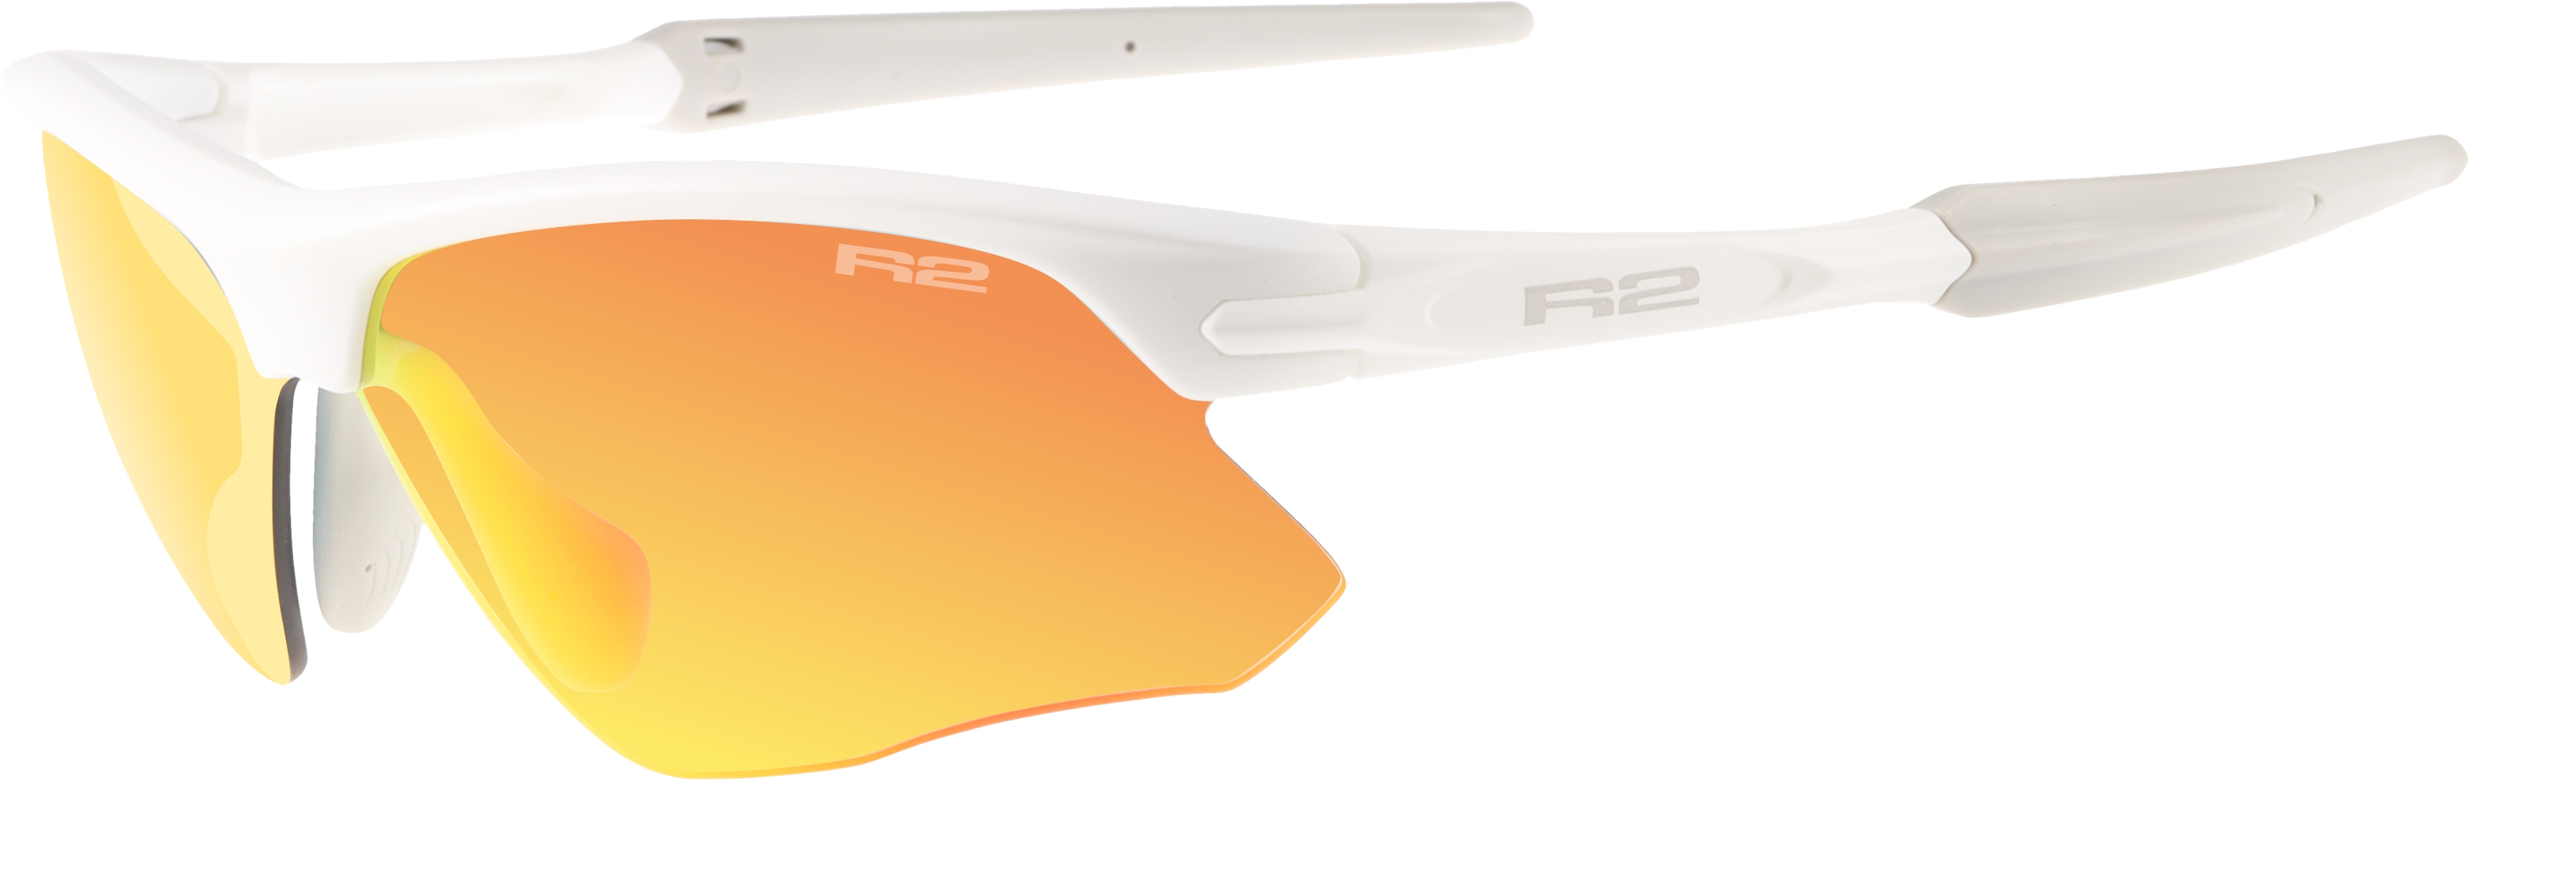 Sportovní sluneční brýle R2 KICK AT109G - XS